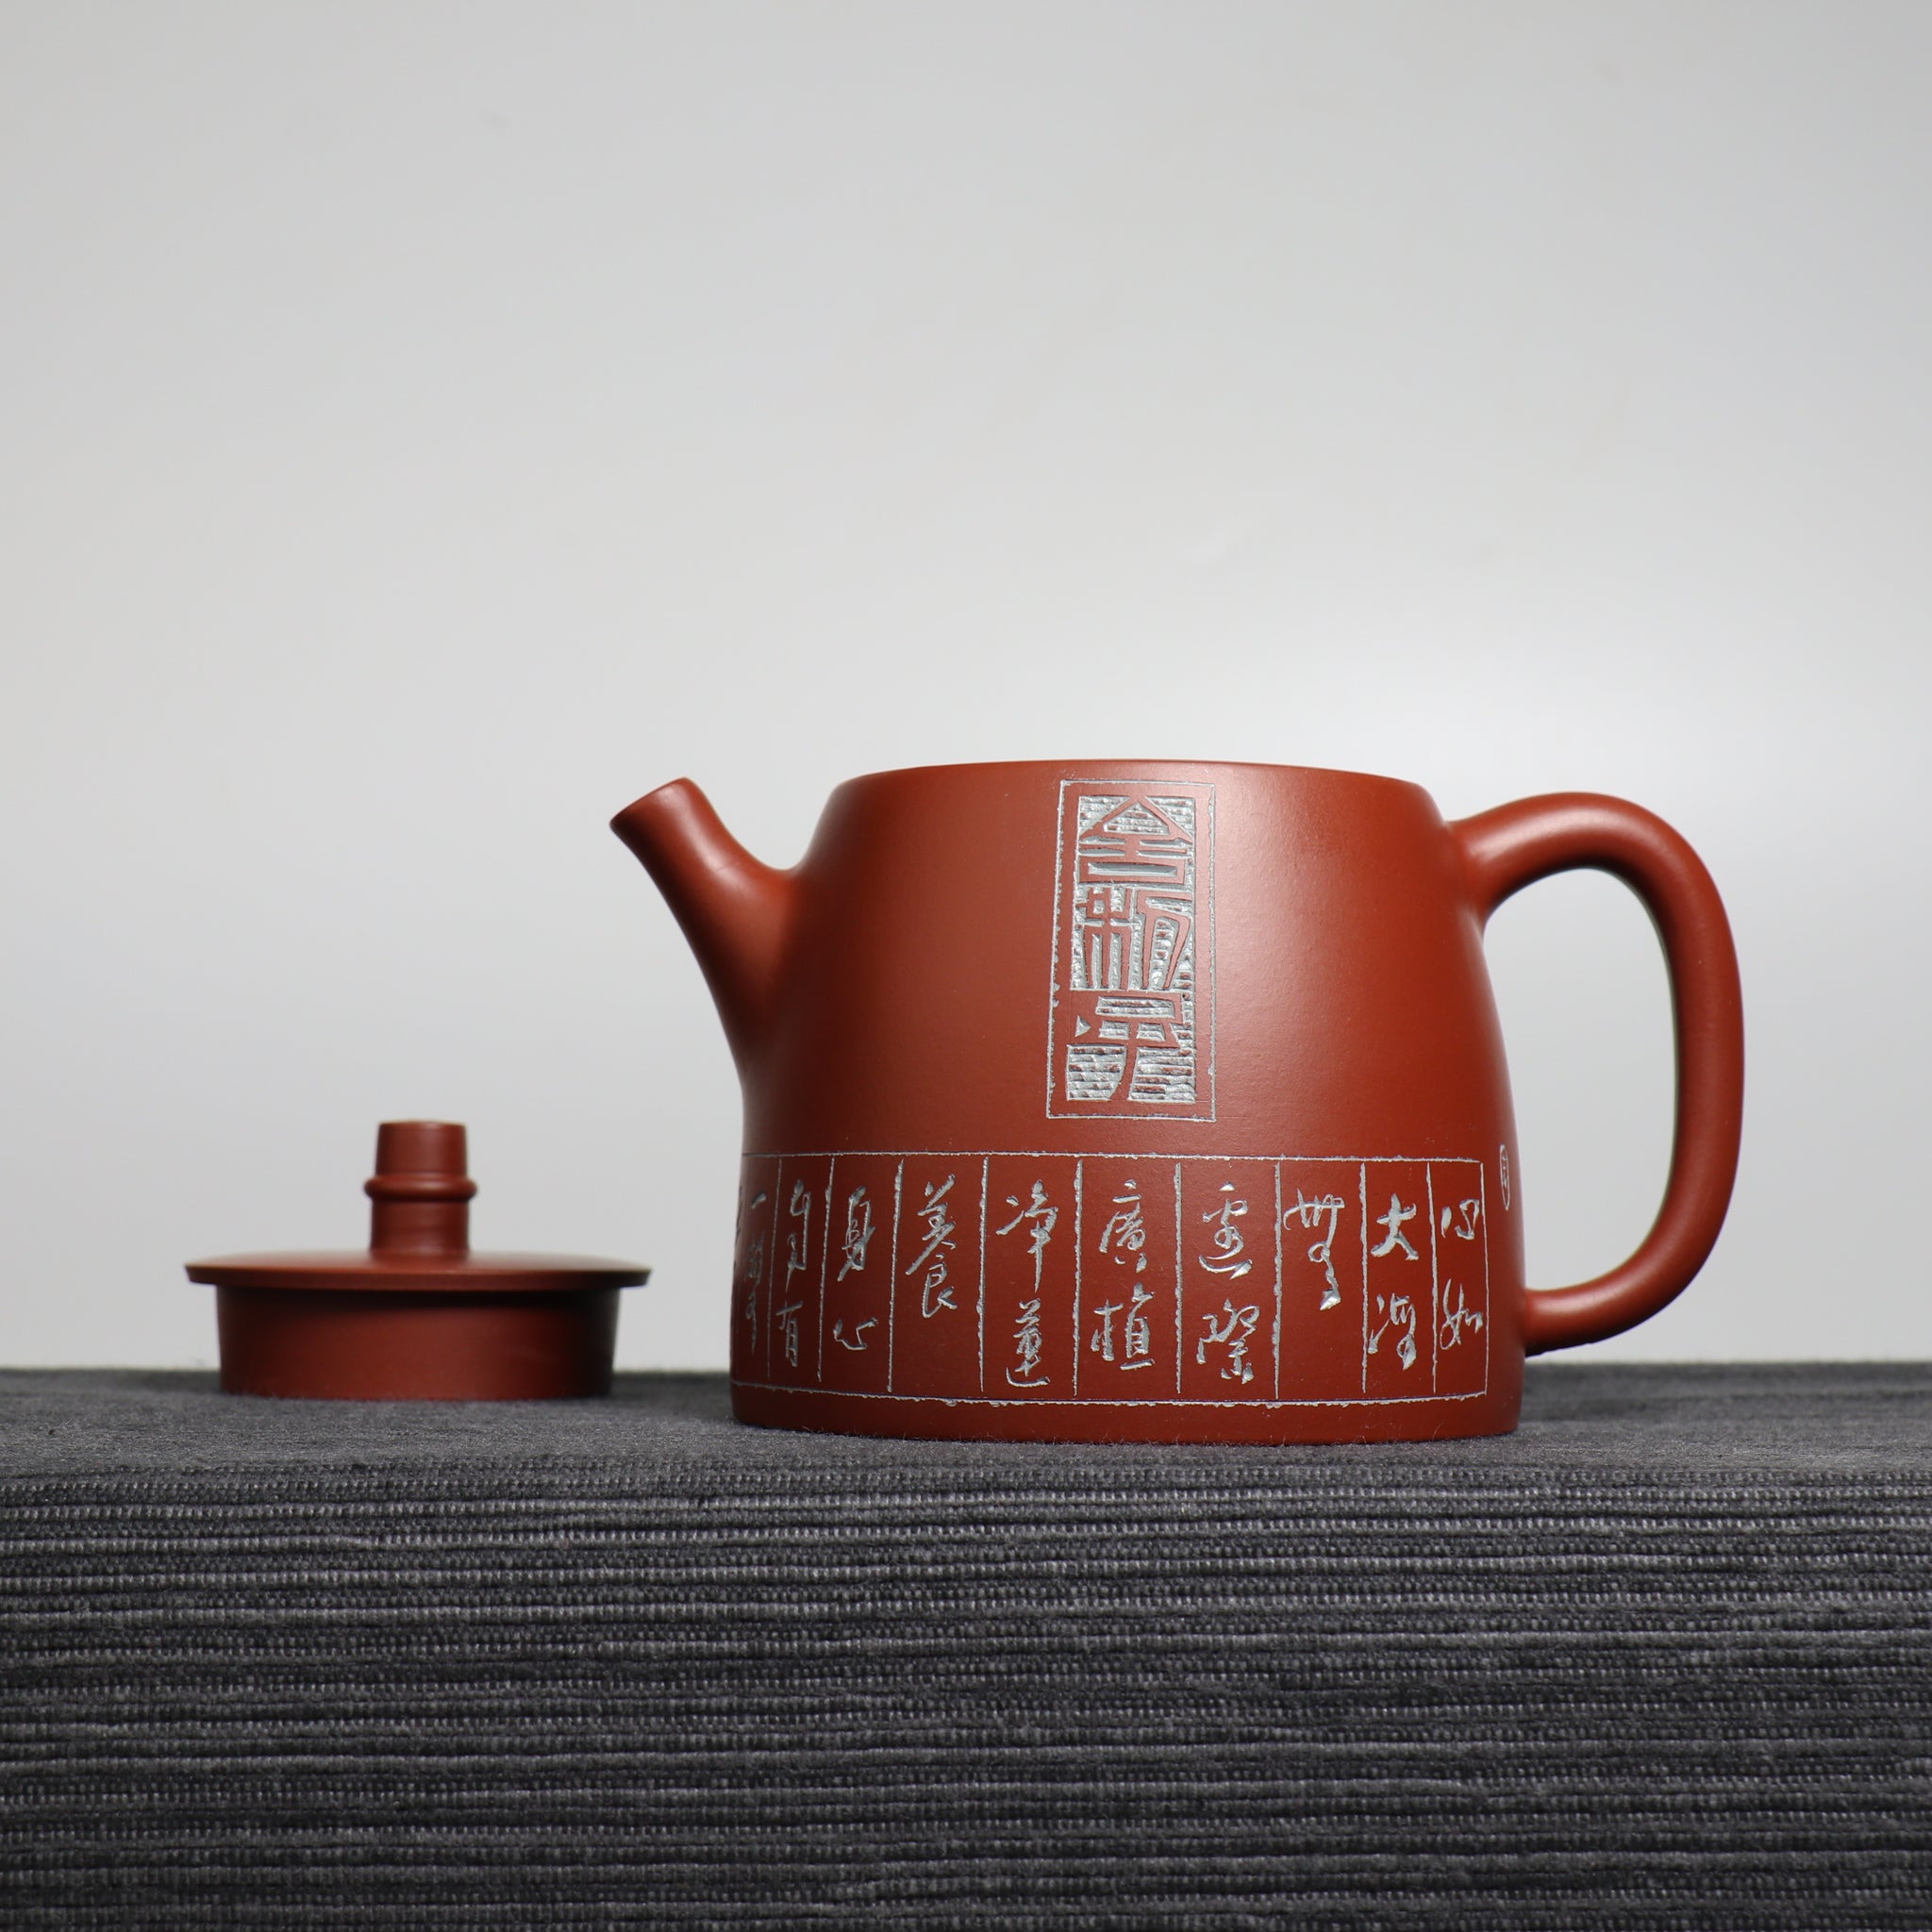 【漢鐸】大紅袍書法篆刻紫砂茶壺